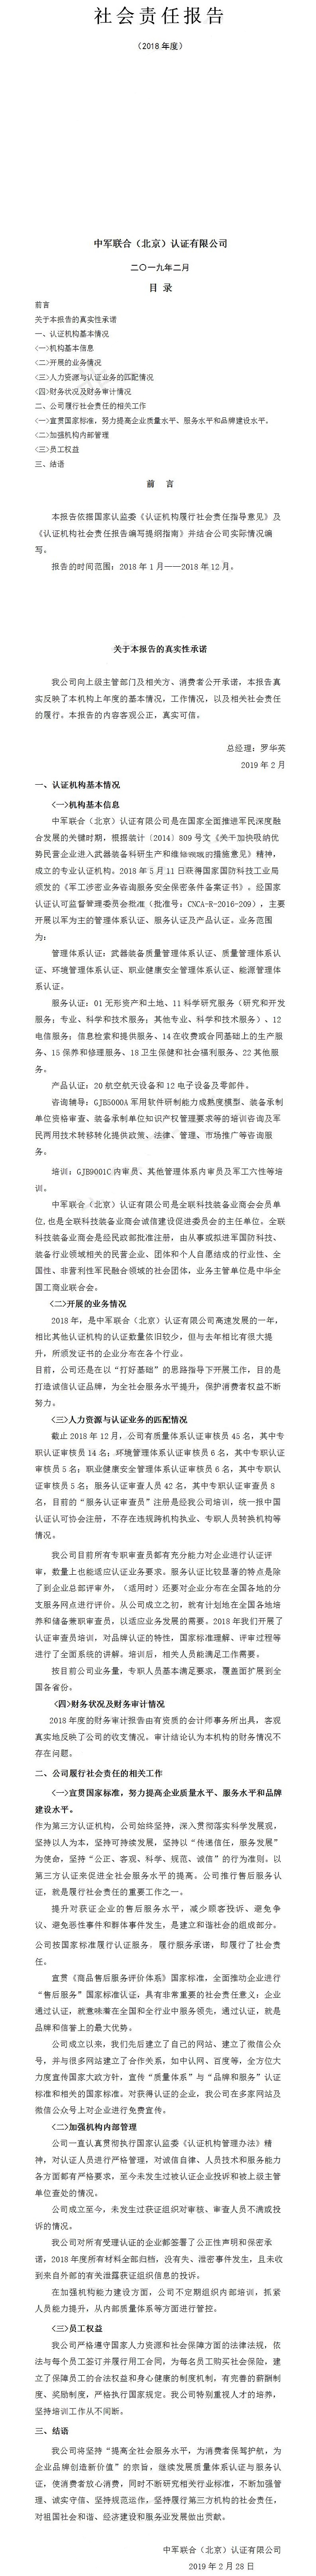 中军联合（北京）认证有限公司社会责任报告2018